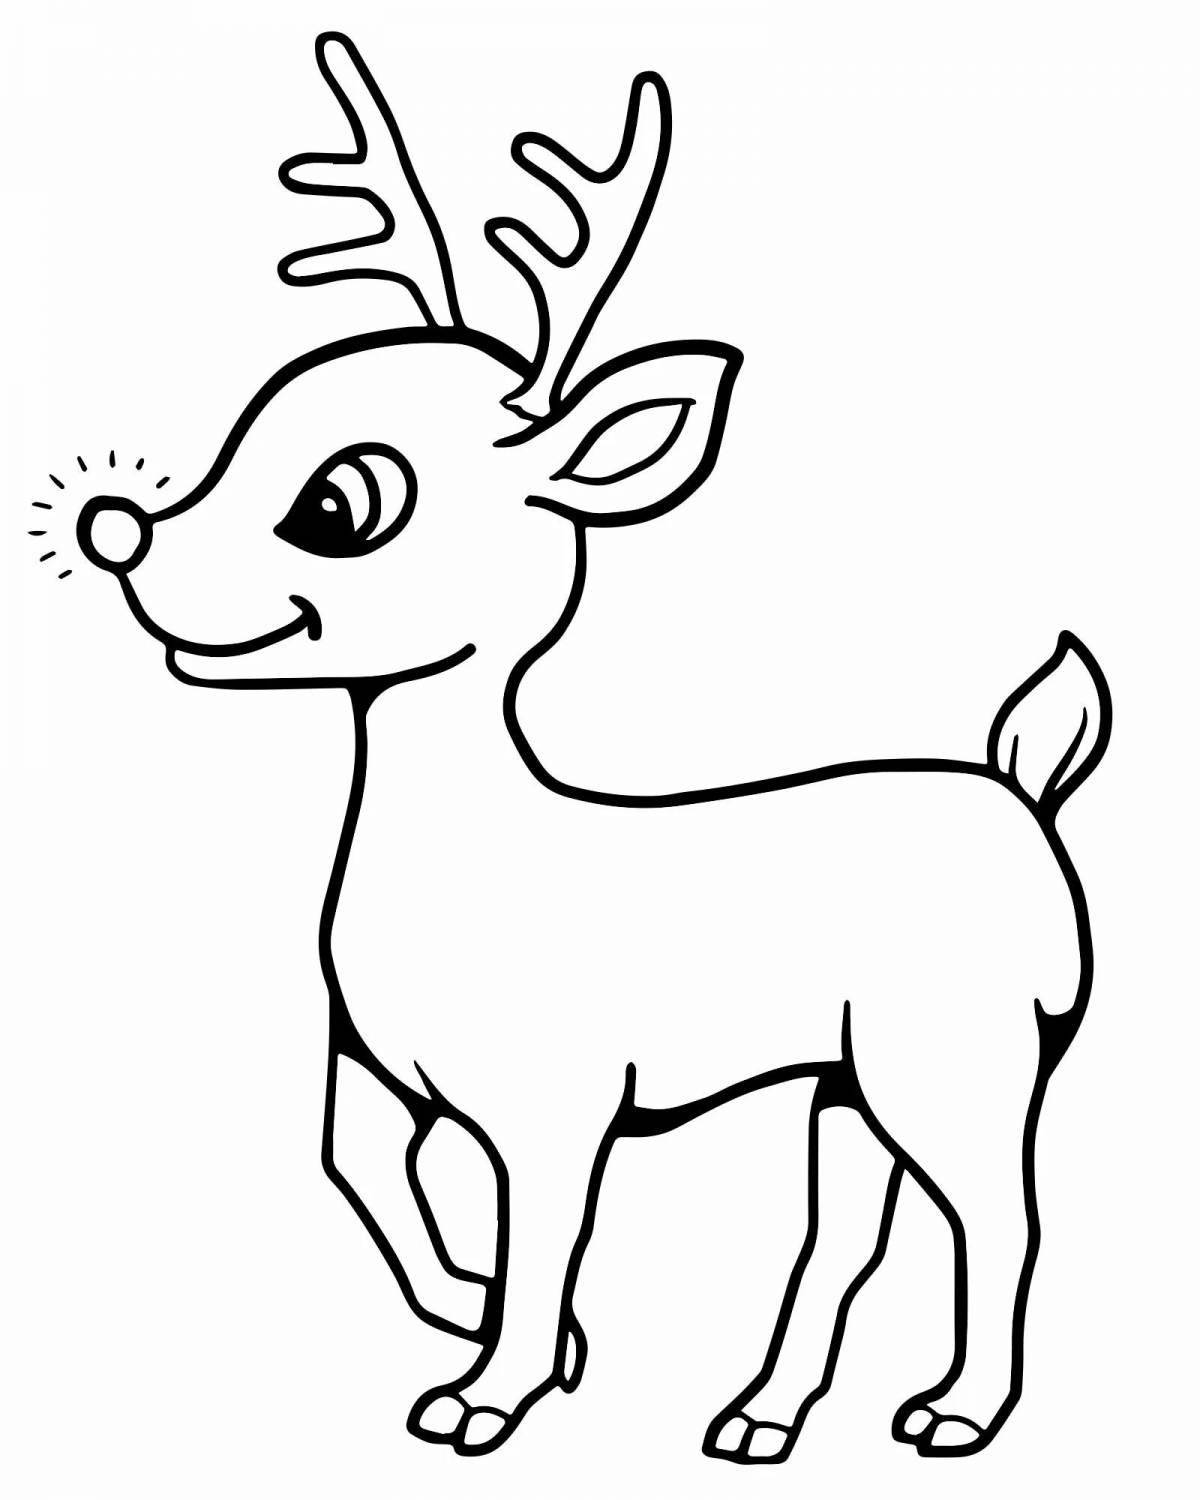 Fun coloring deer for kids